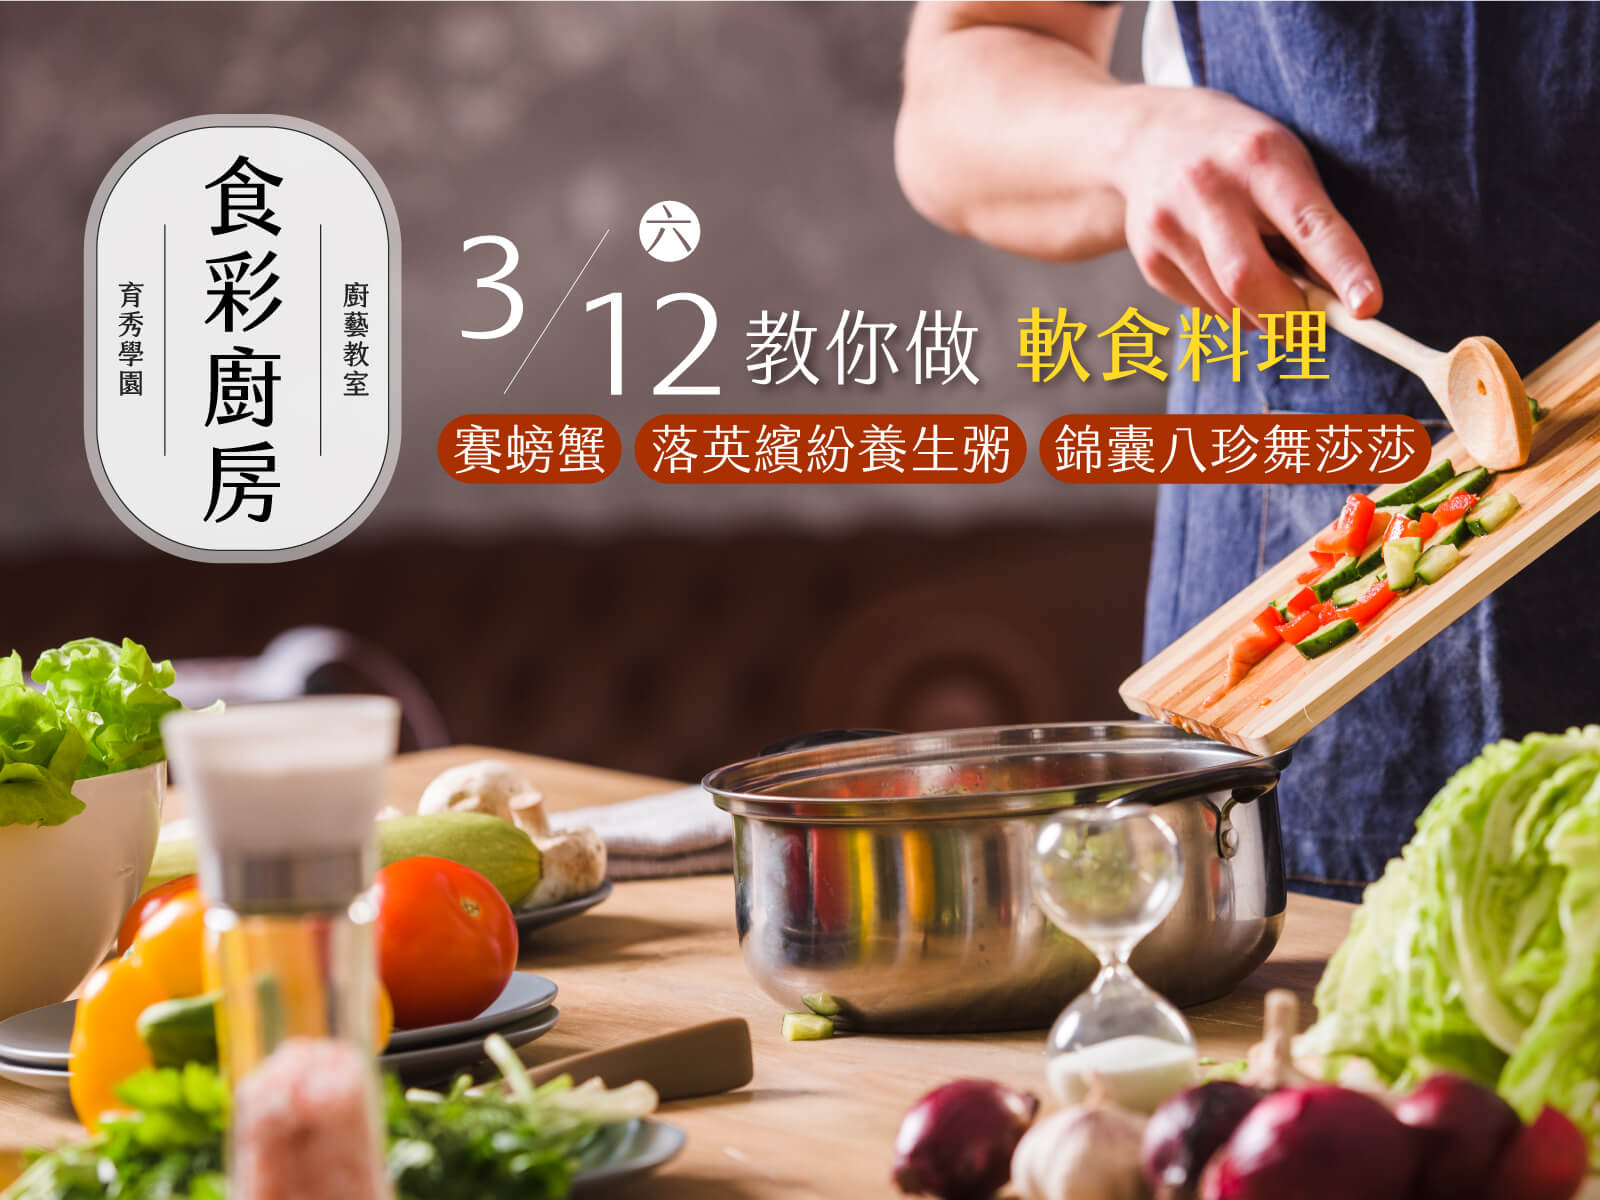 食彩廚房2022年3月12日軟食料理課程